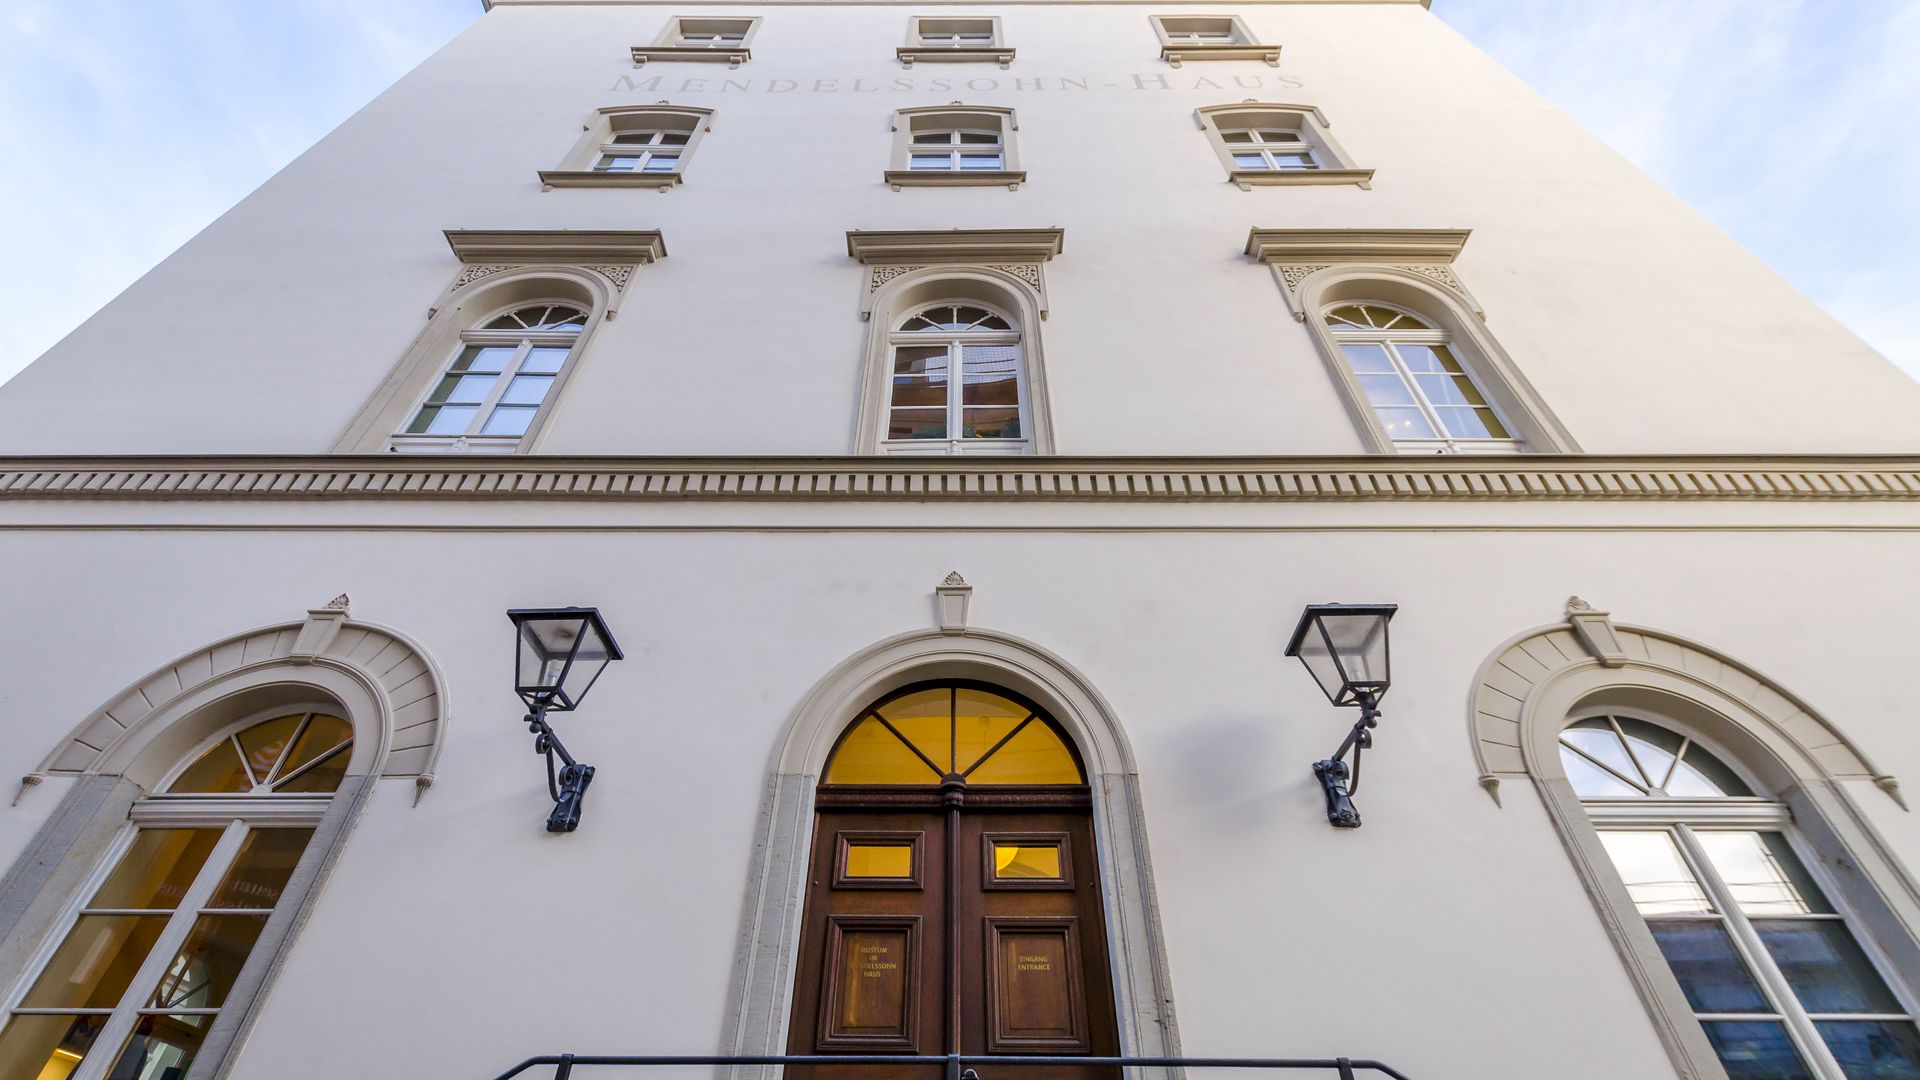 Vue sur la façade de la maison de Mendelssohn, une des étapes du parcours des « traces musicales » de Leipzig, ville de la musique, qui abrite un musée dédié à la vie et l’œuvre de Felix Mendelssohn Bartholdy, institution culturelle, attraction touristique.